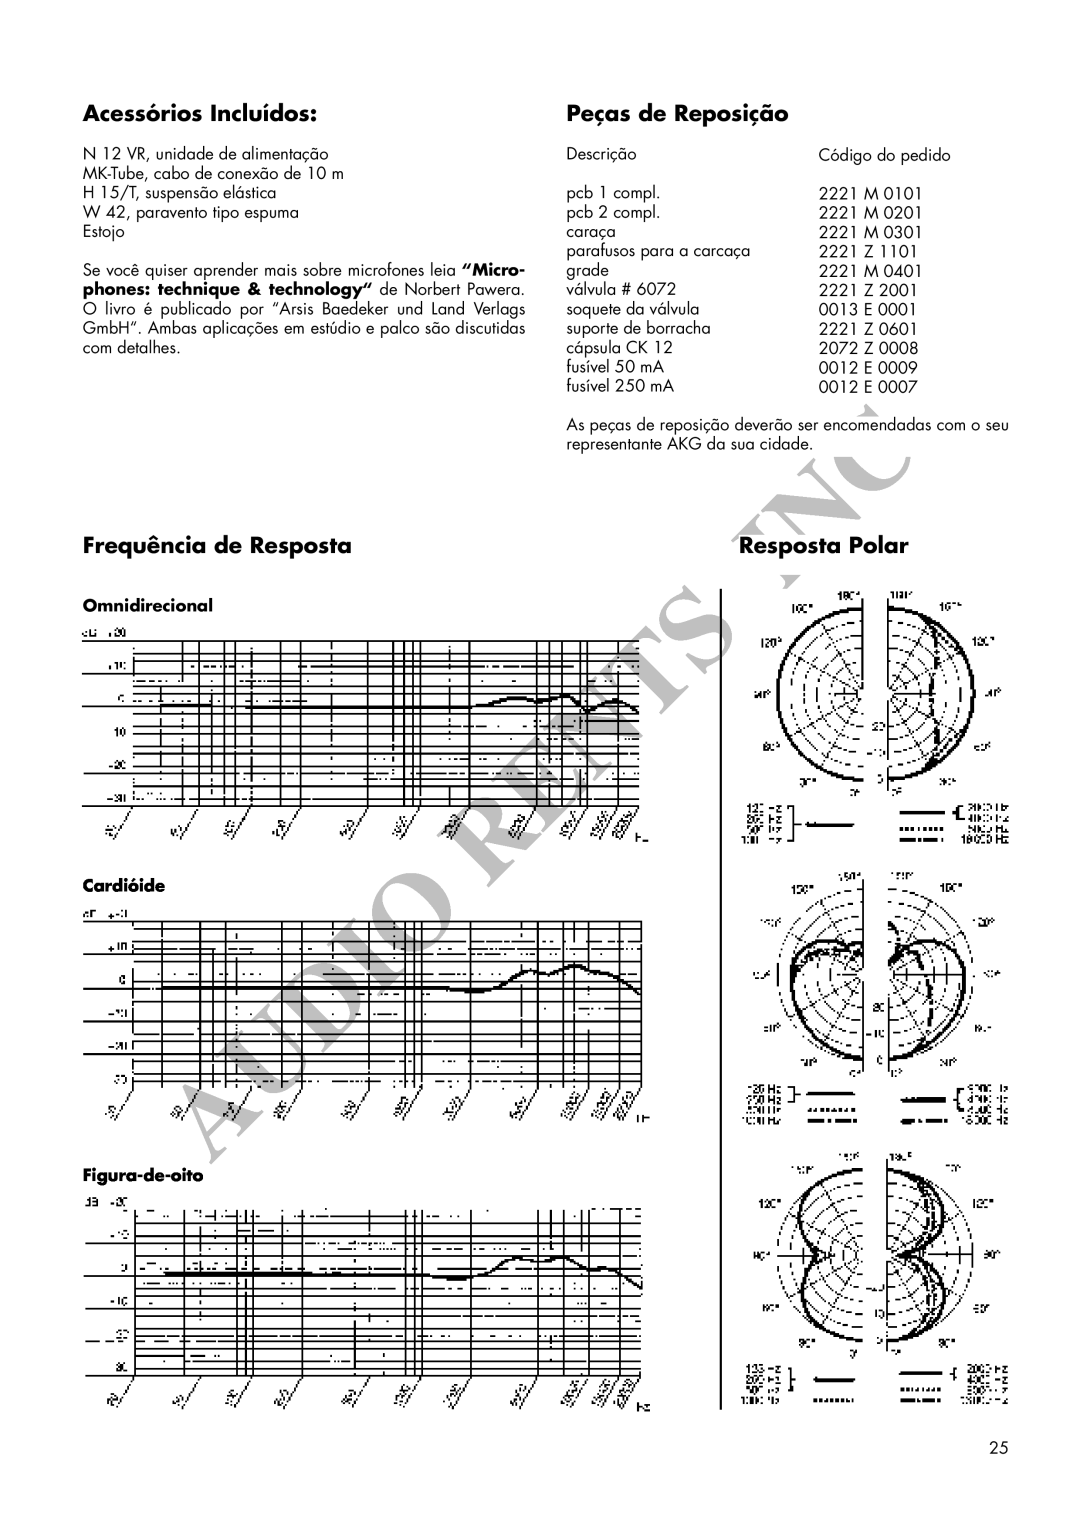 AKG Acoustics C 12VR manual Acessórios Incluídos, Peças de Reposição, Frequência de Resposta, Resposta Polar 